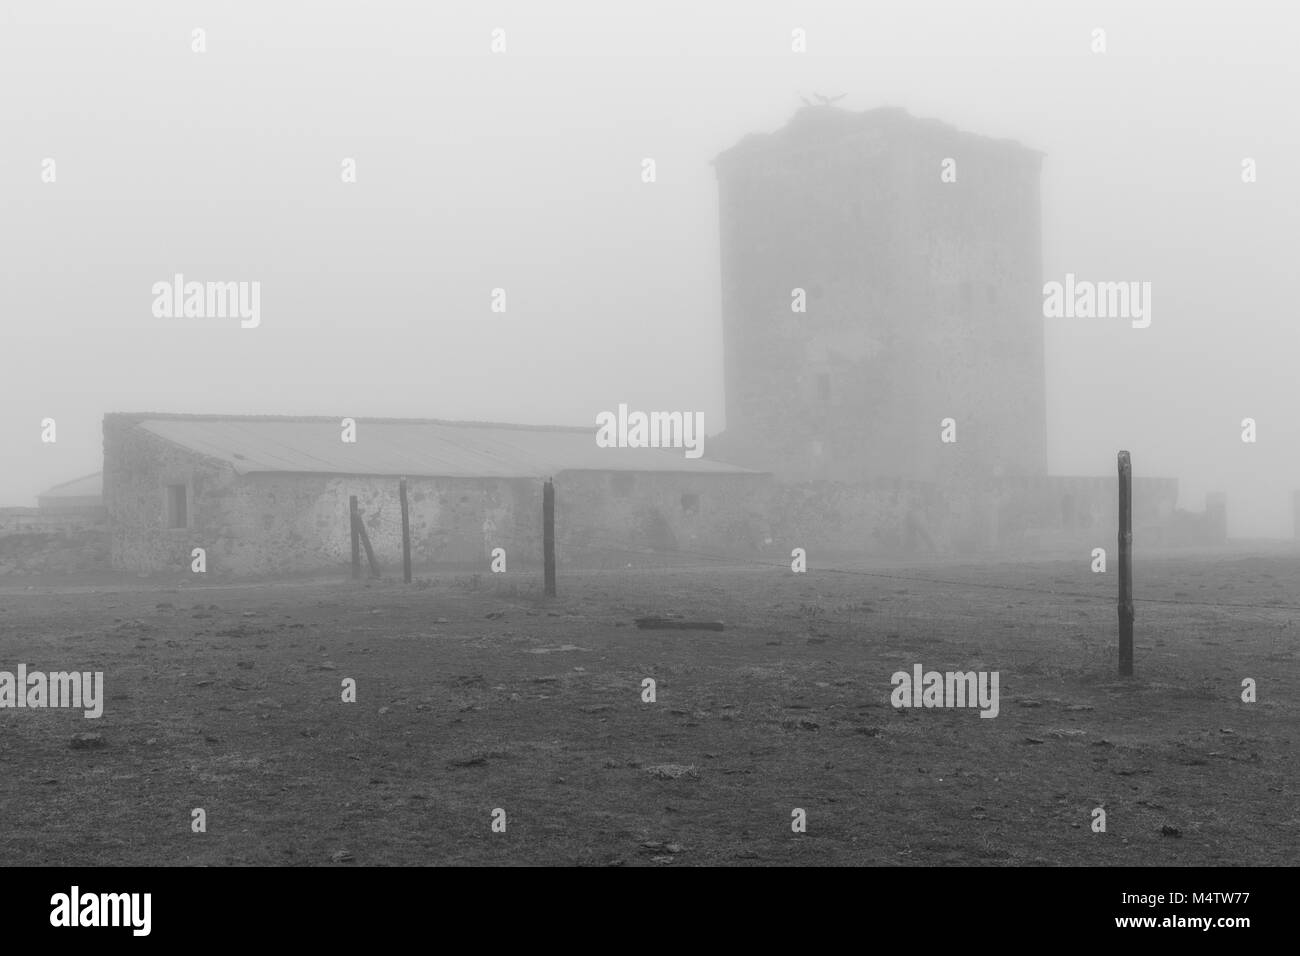 Turm der Mogollones. Landschaft mit einem mittelalterlichen Turm in Nebel gehüllt. Der Extremadura. Spanien. Stockfoto